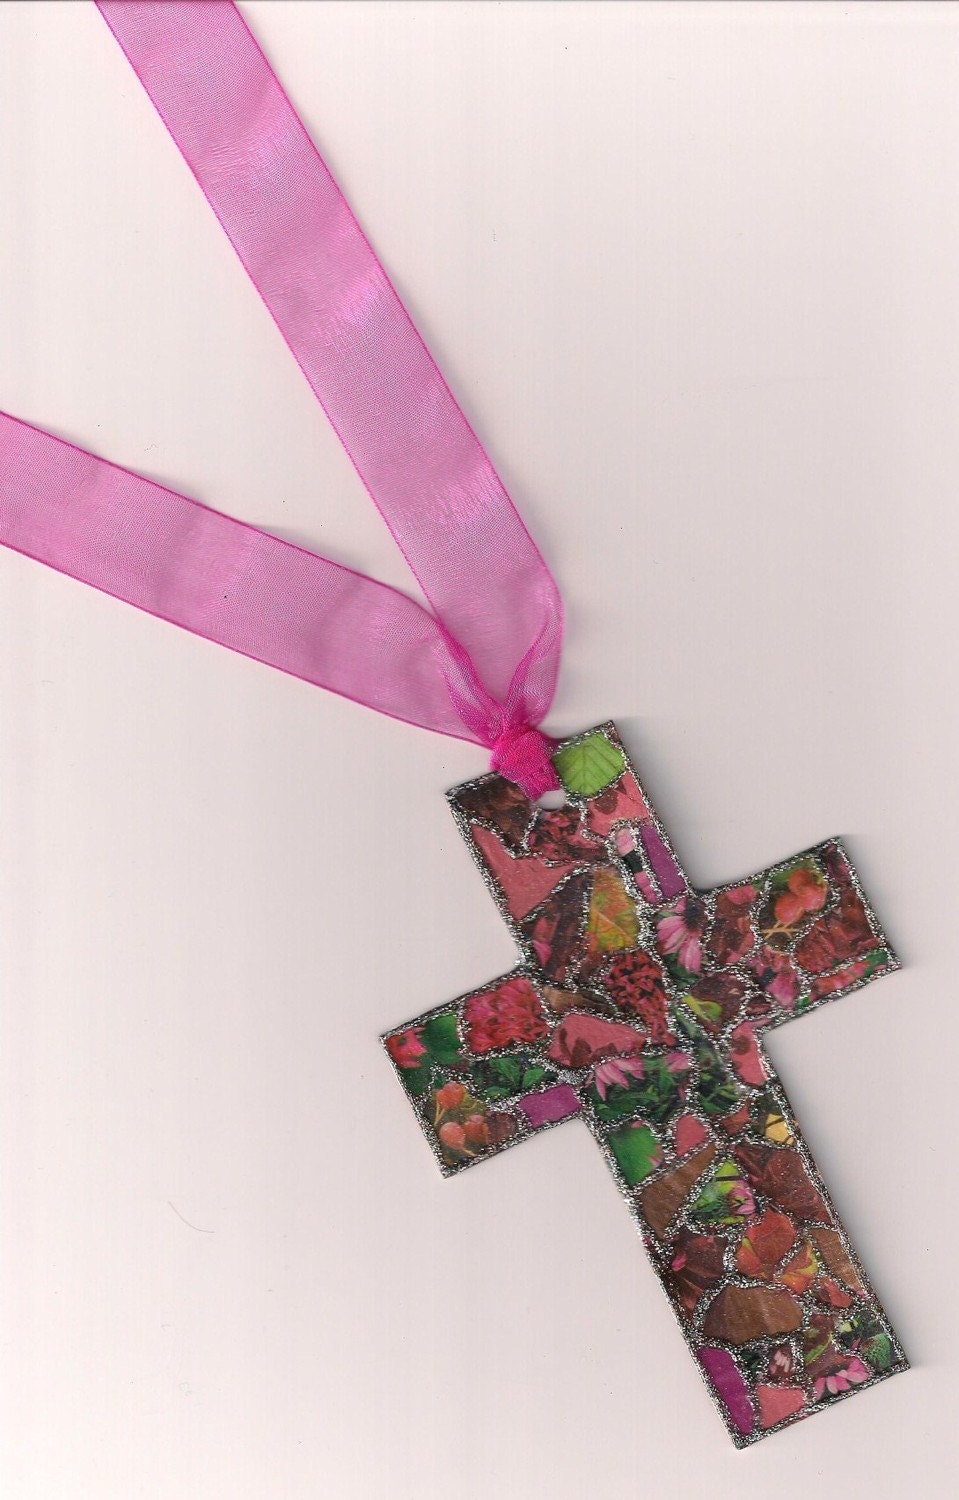 At The Cross Shades of Pink & Fushia Bookmark